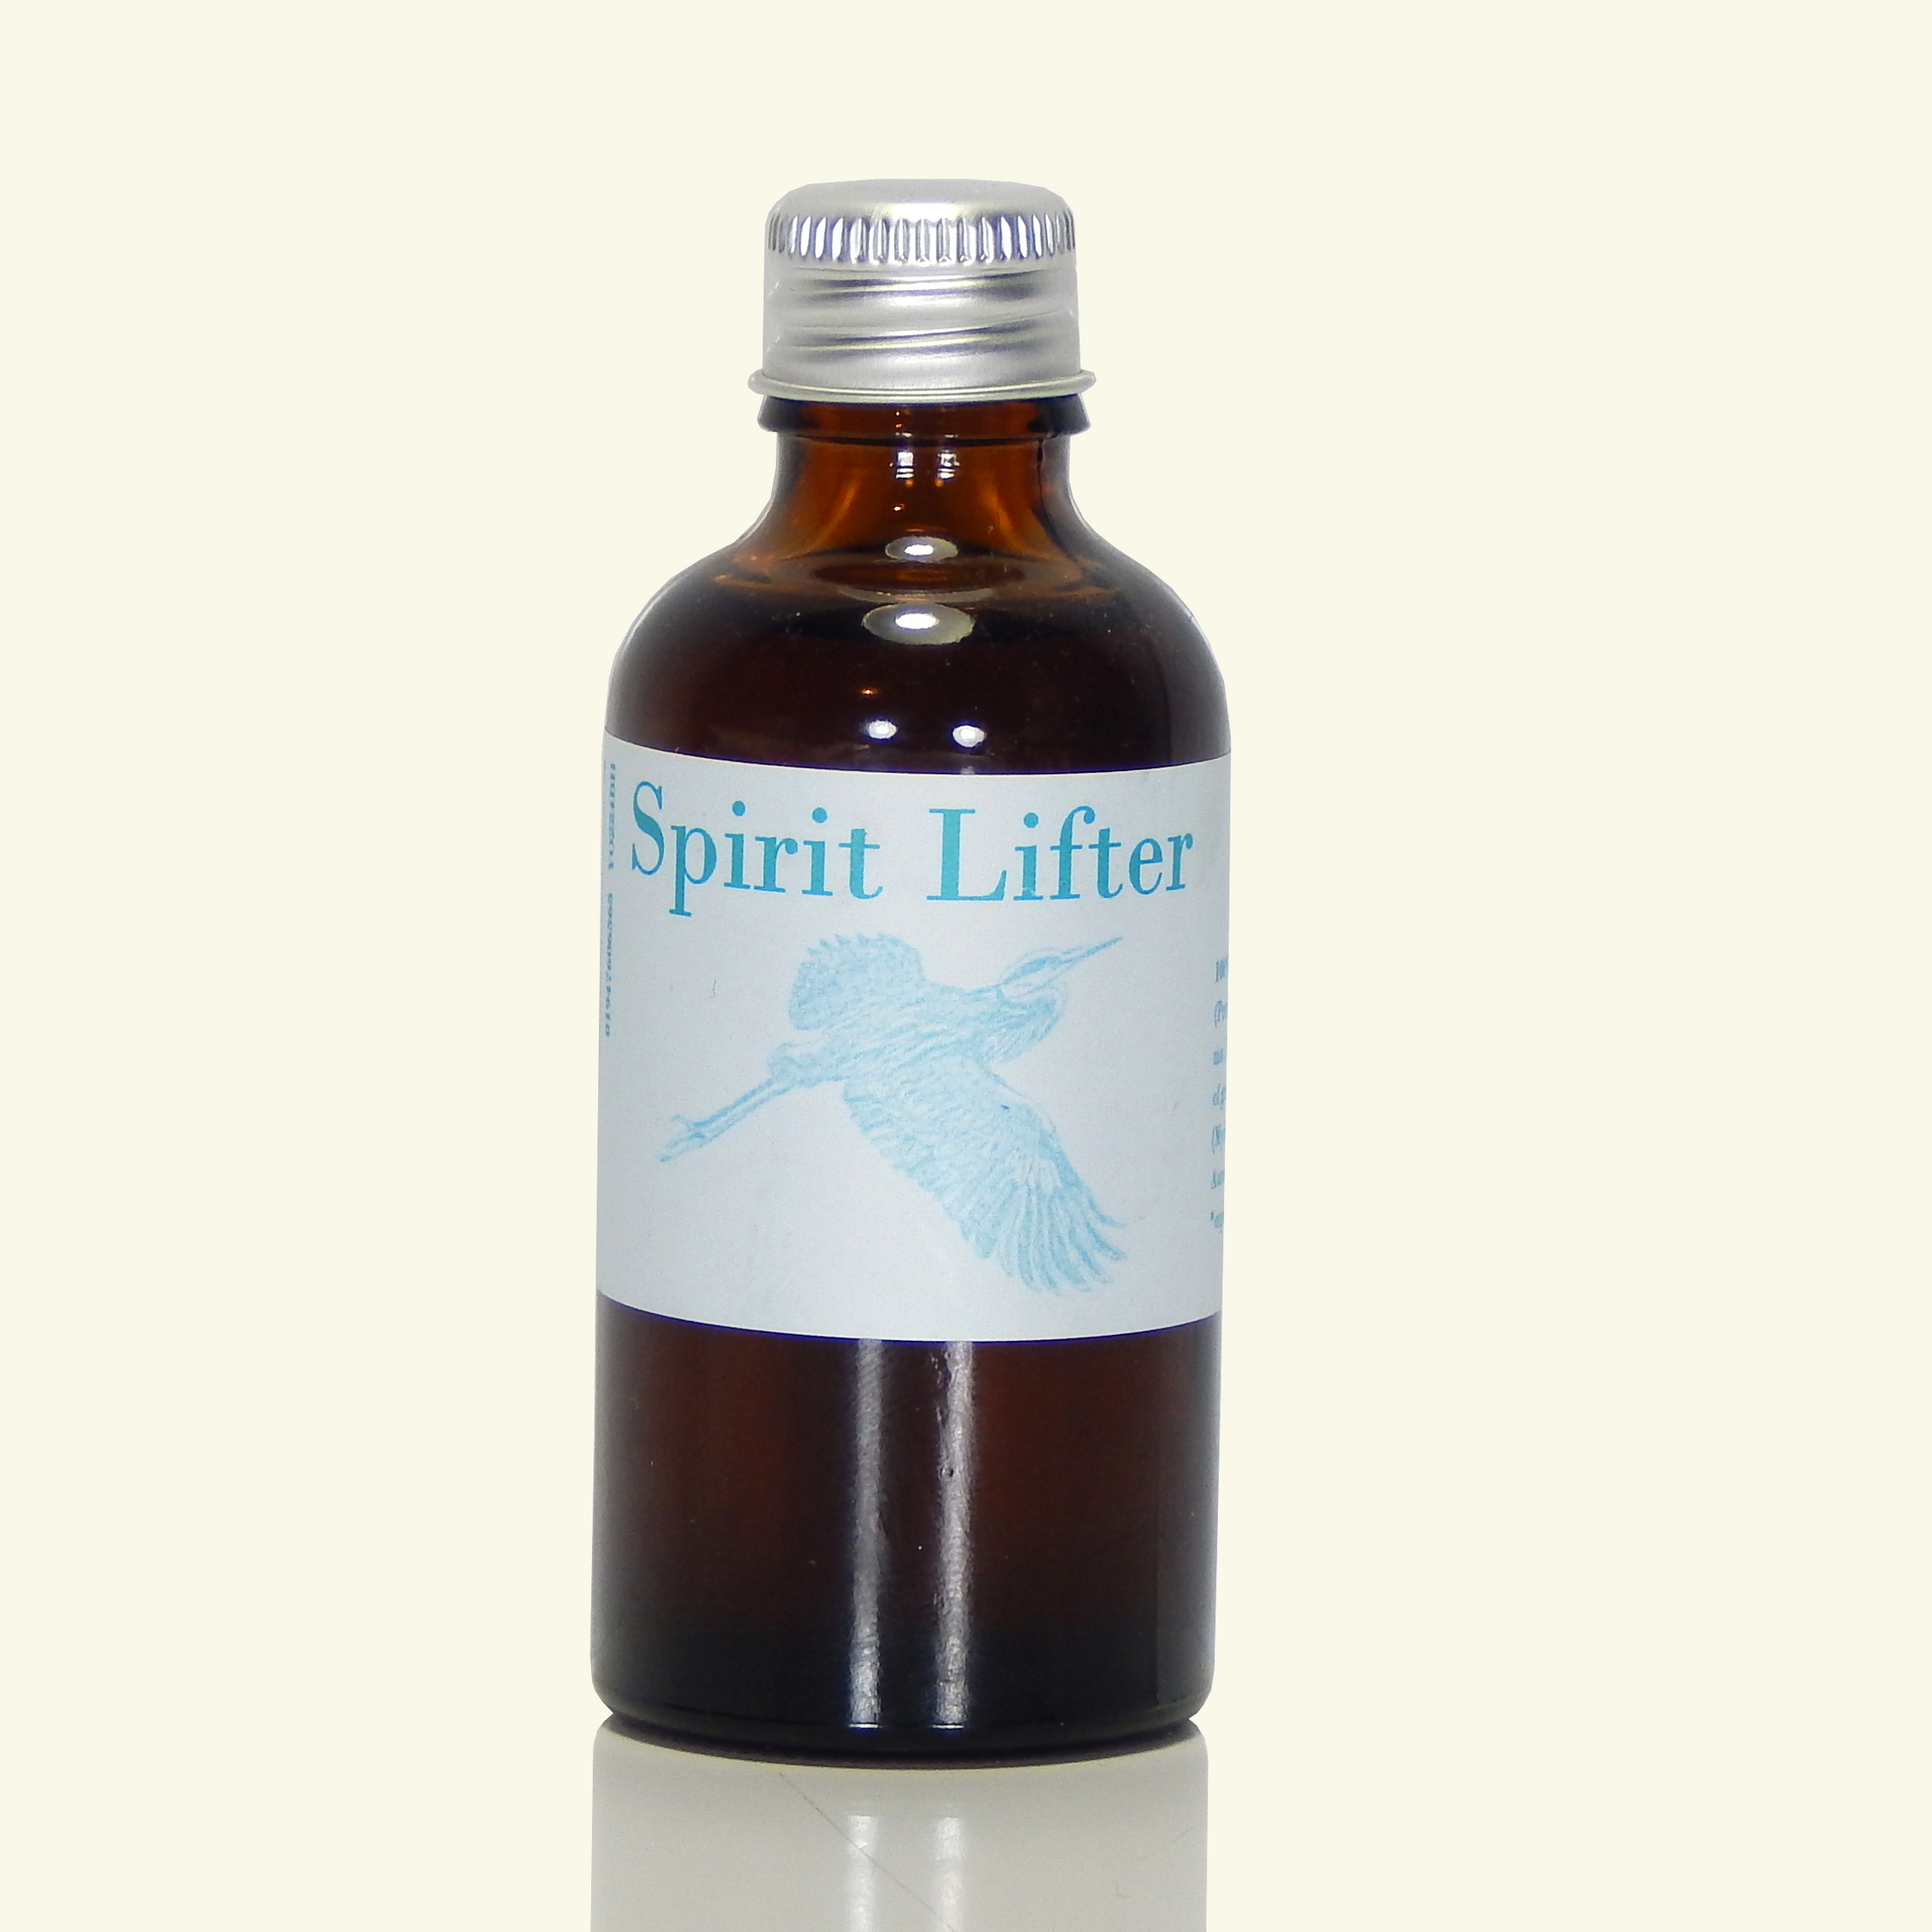 Spirit Lifter